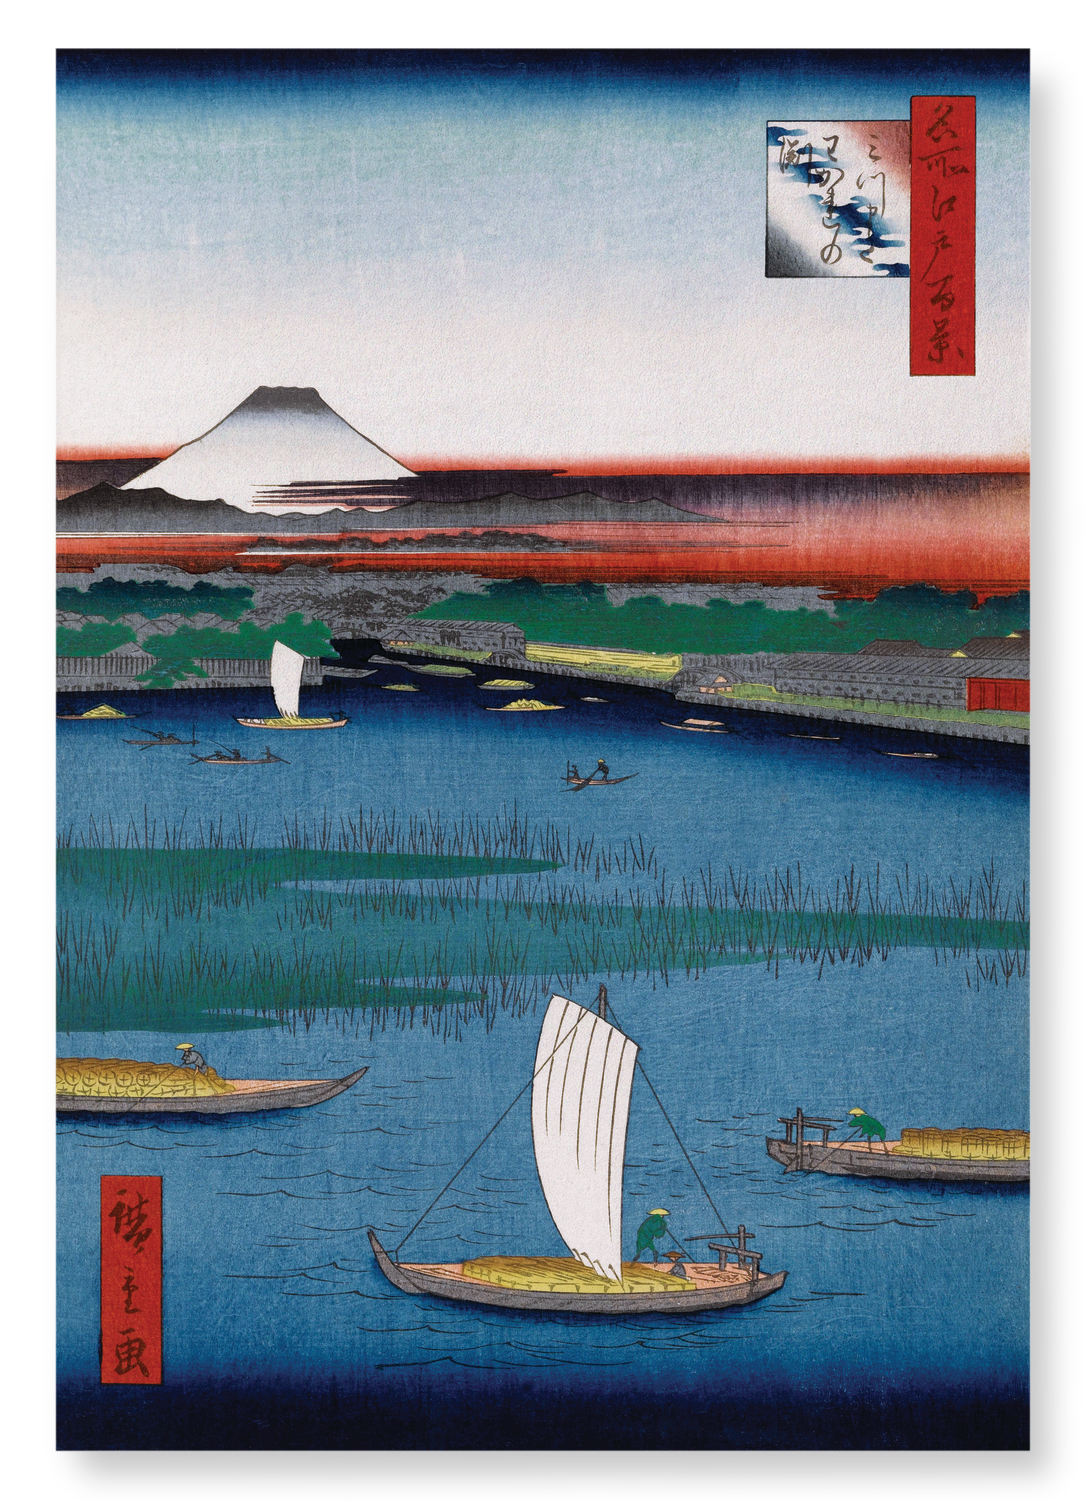 MITSUMATA WAKARENOFUCHI (1857): Japanese Art Print